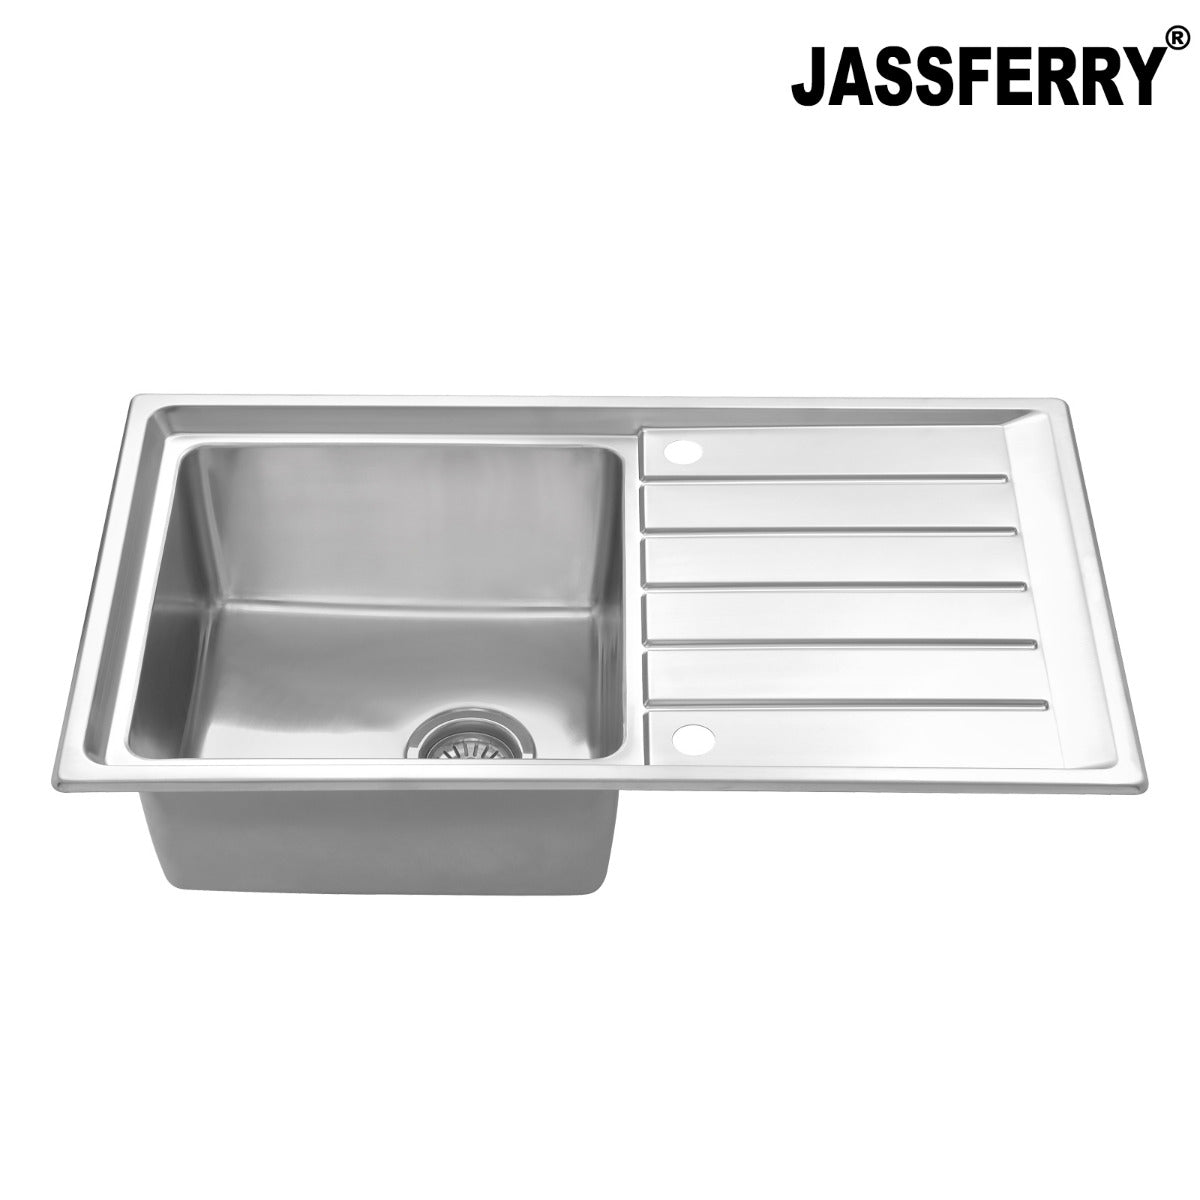 JassferryJASSFERRY Welding Stainless Steel Kitchen Sink Single 1 Bowl Reversible DrainerKitchen Sinks